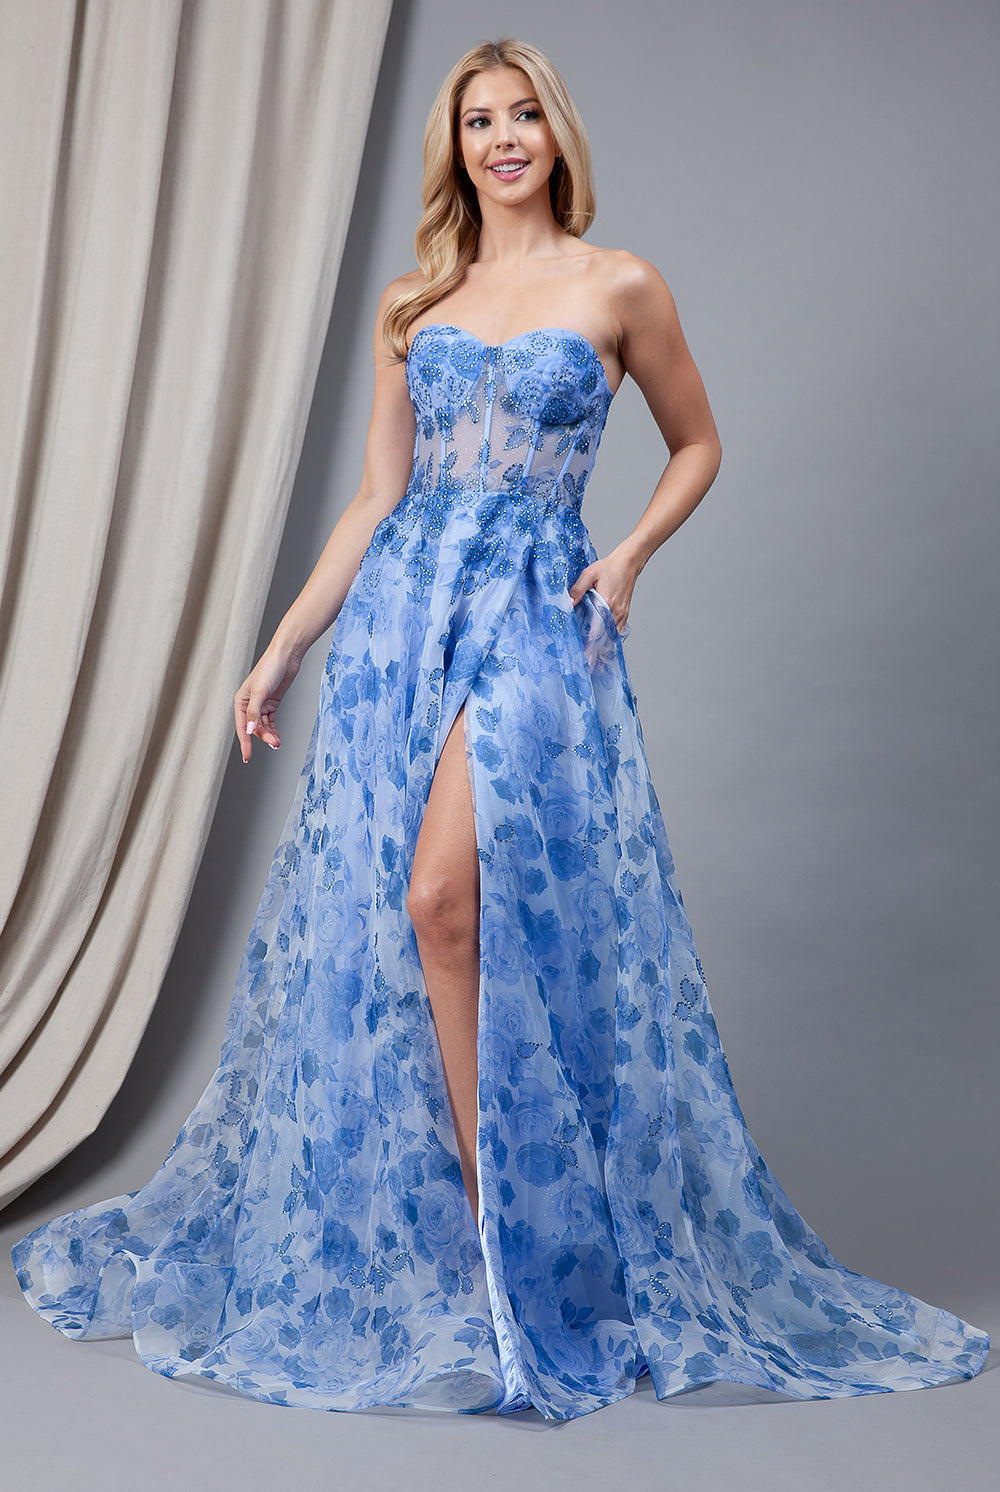 Floral Strapless Side Slit Embellished Jewel Long Prom Dress AC2106-Prom Dress-smcfashion.com